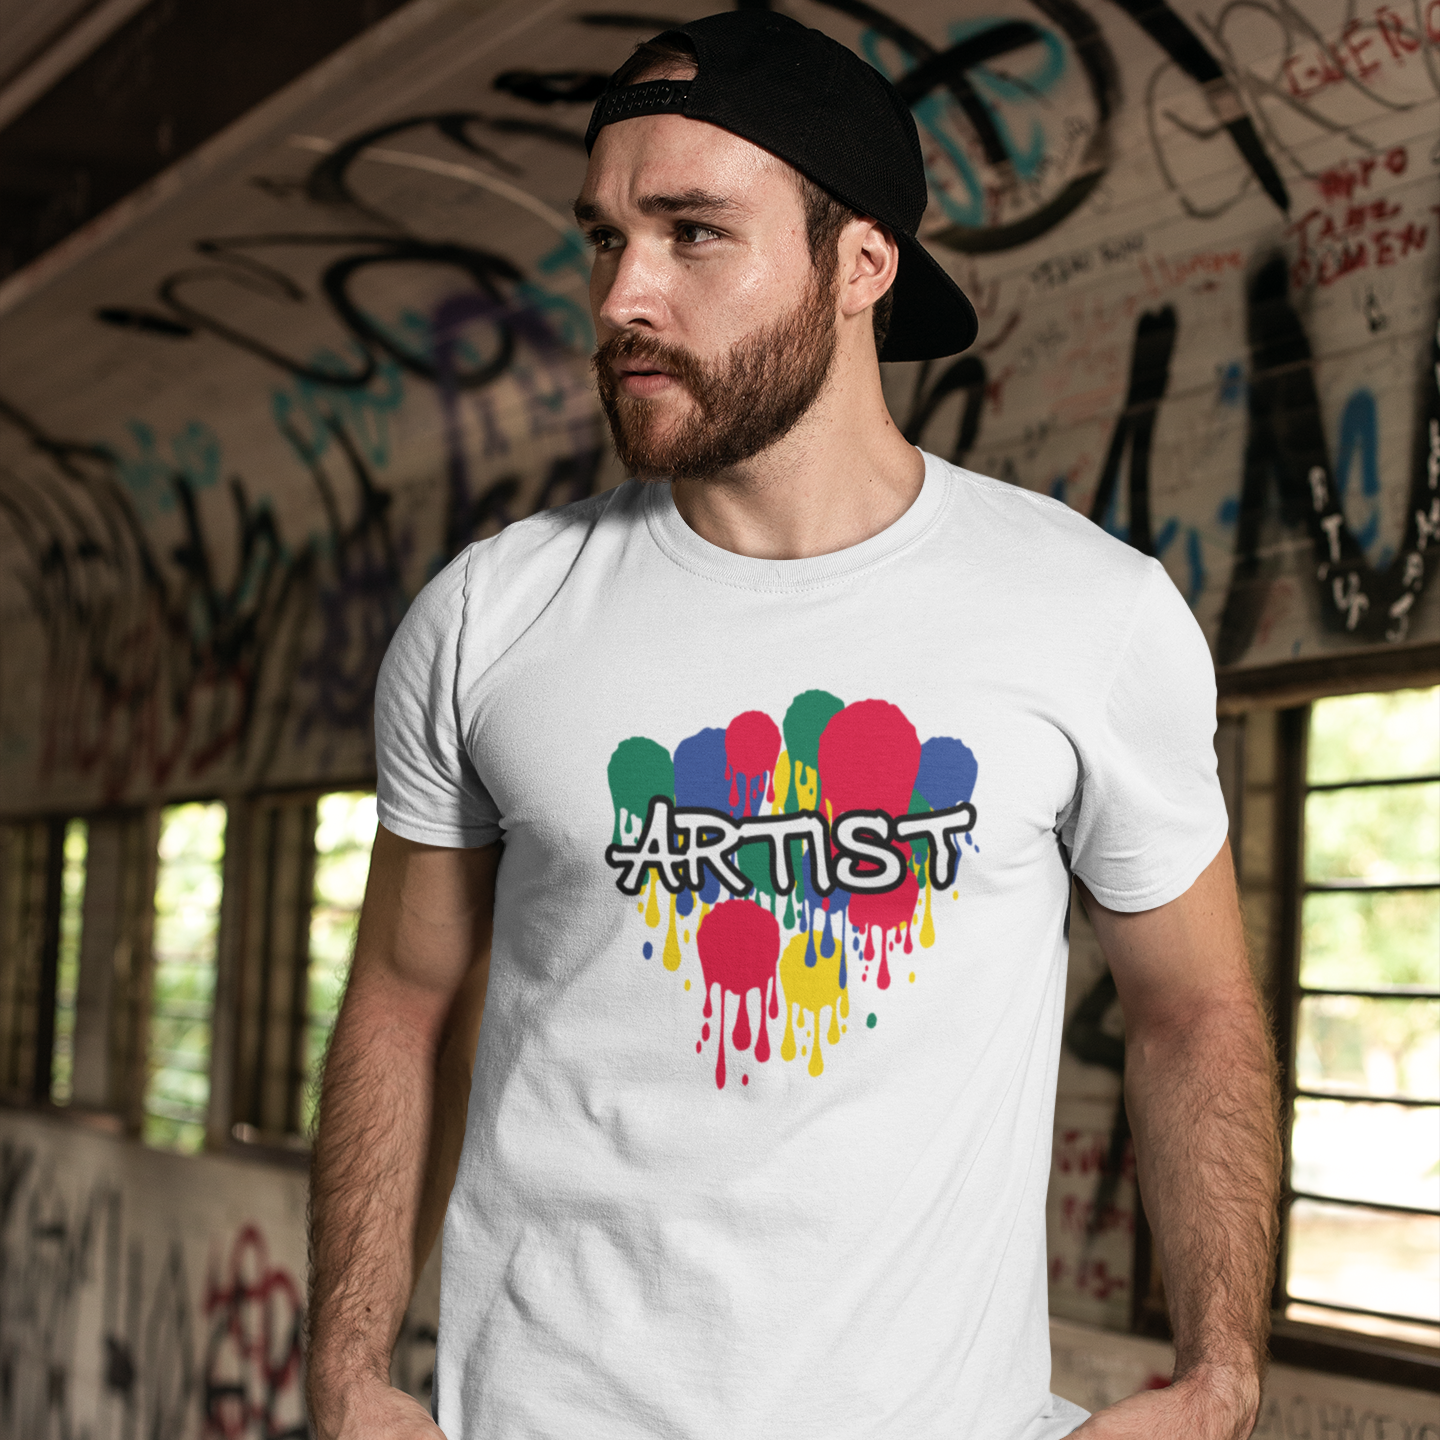 Artist' volwassene shirt